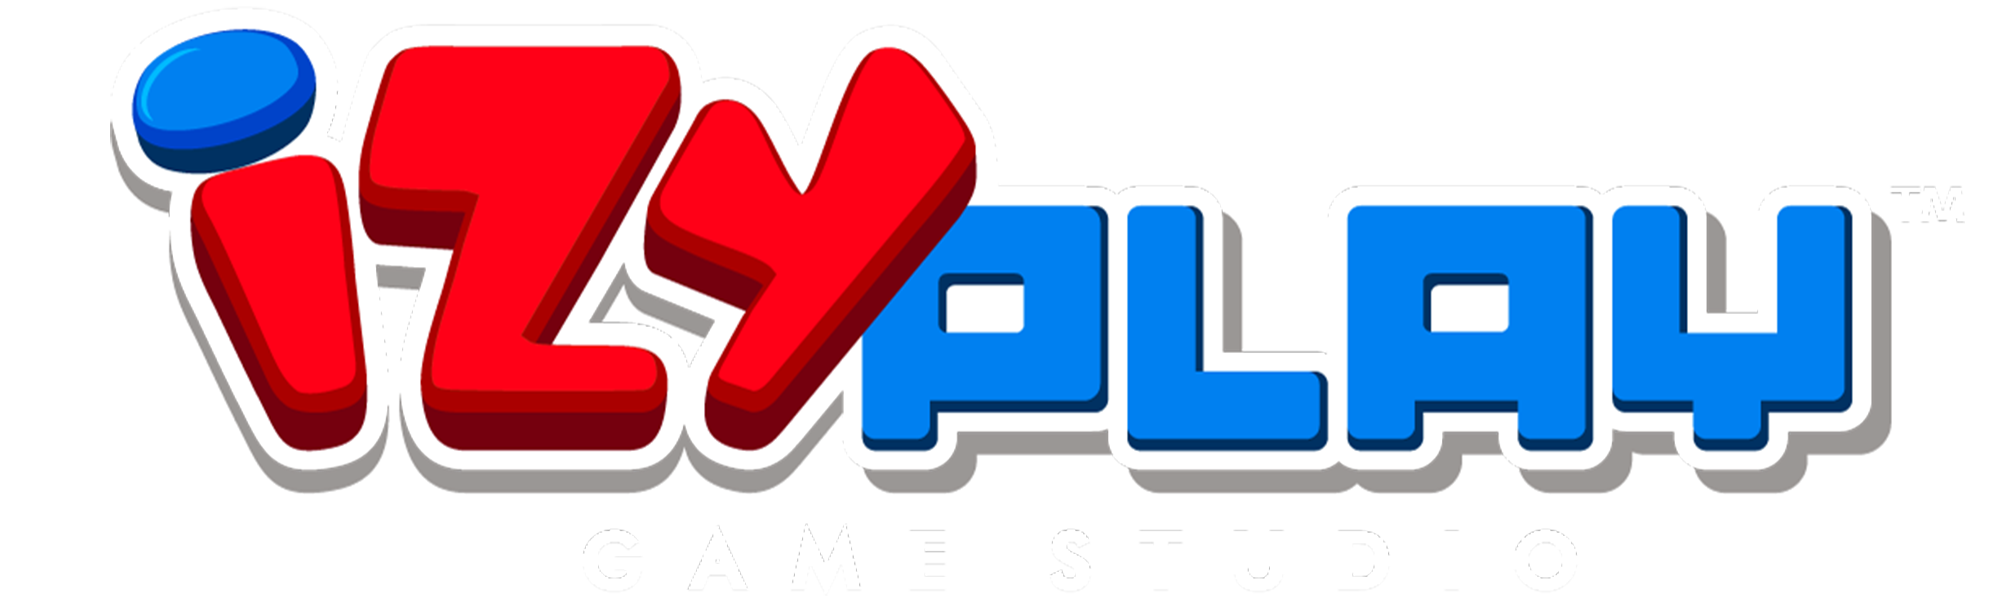 IzyPlay Game Studio